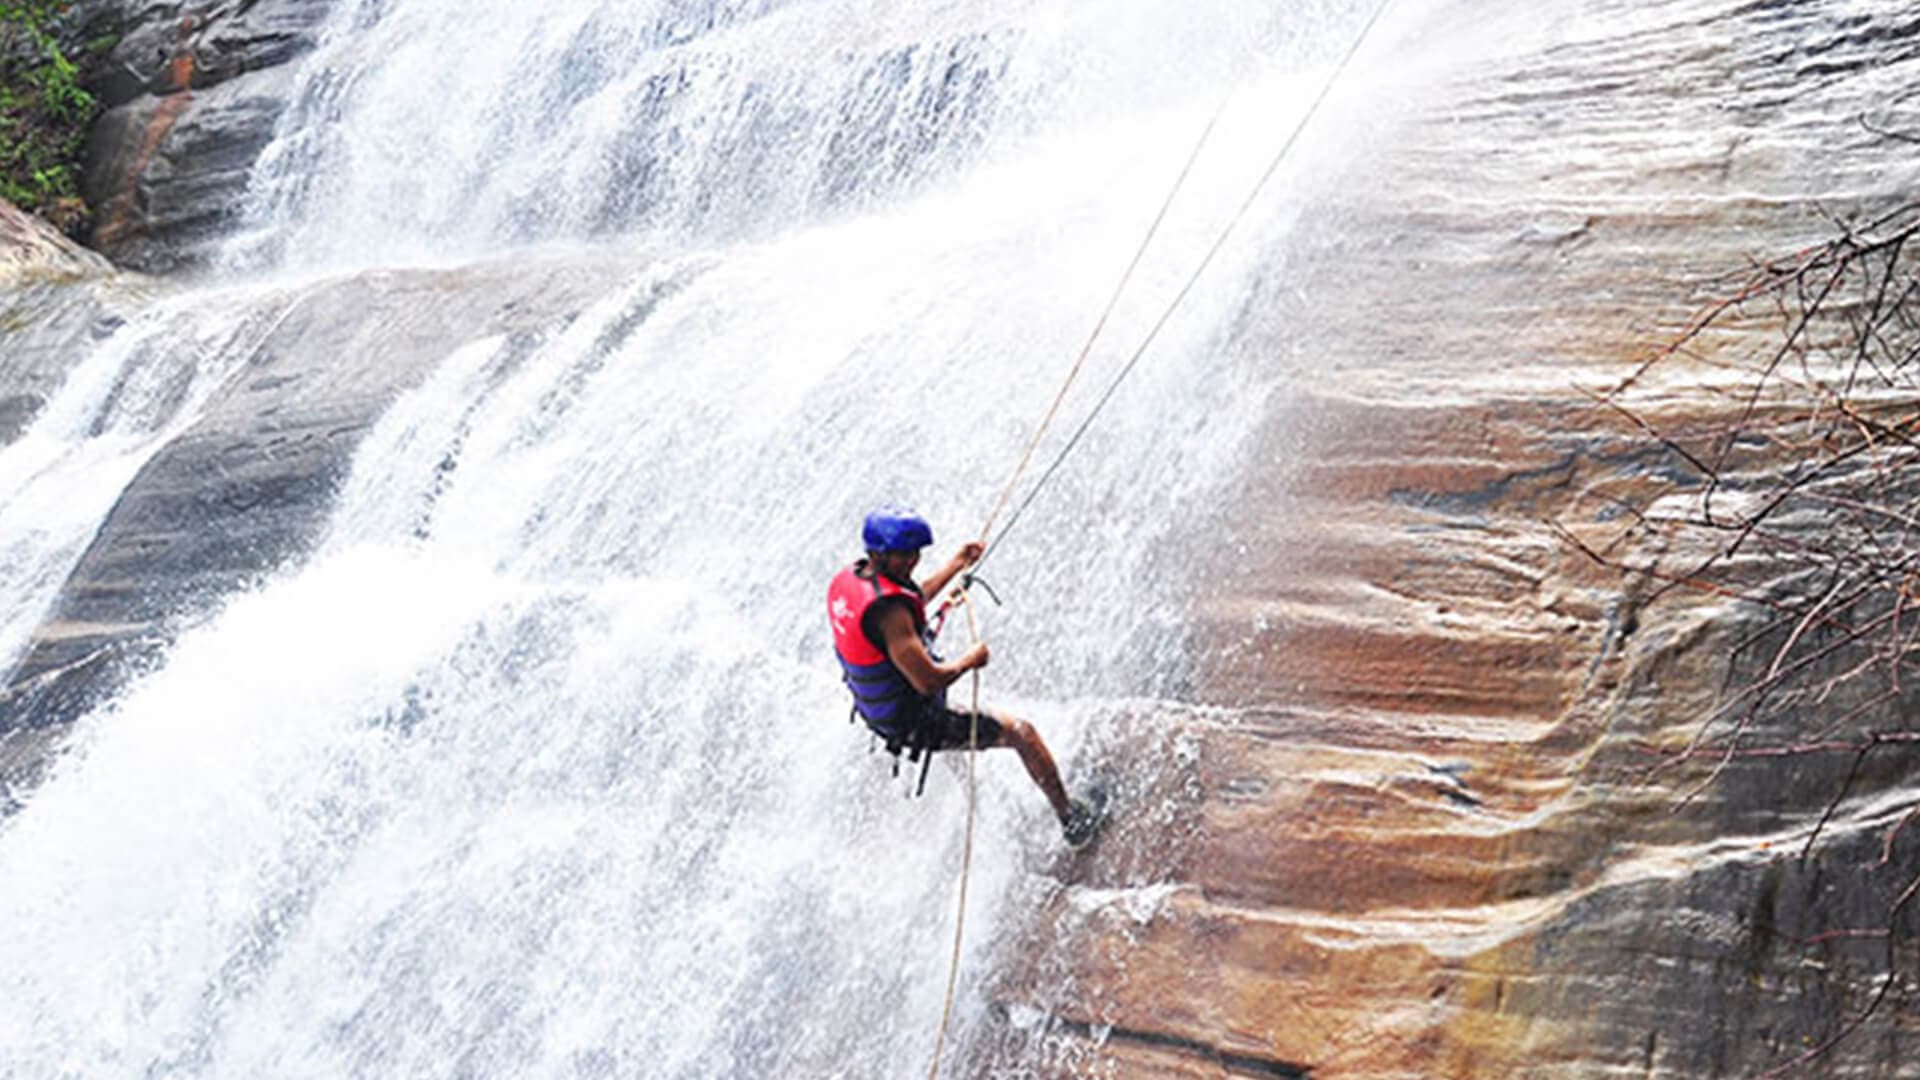 Das Wasser fließt grob im Kithulgala-Wasserfall und sorgt in Sri Lanka für Nervenkitzel beim Abseilen